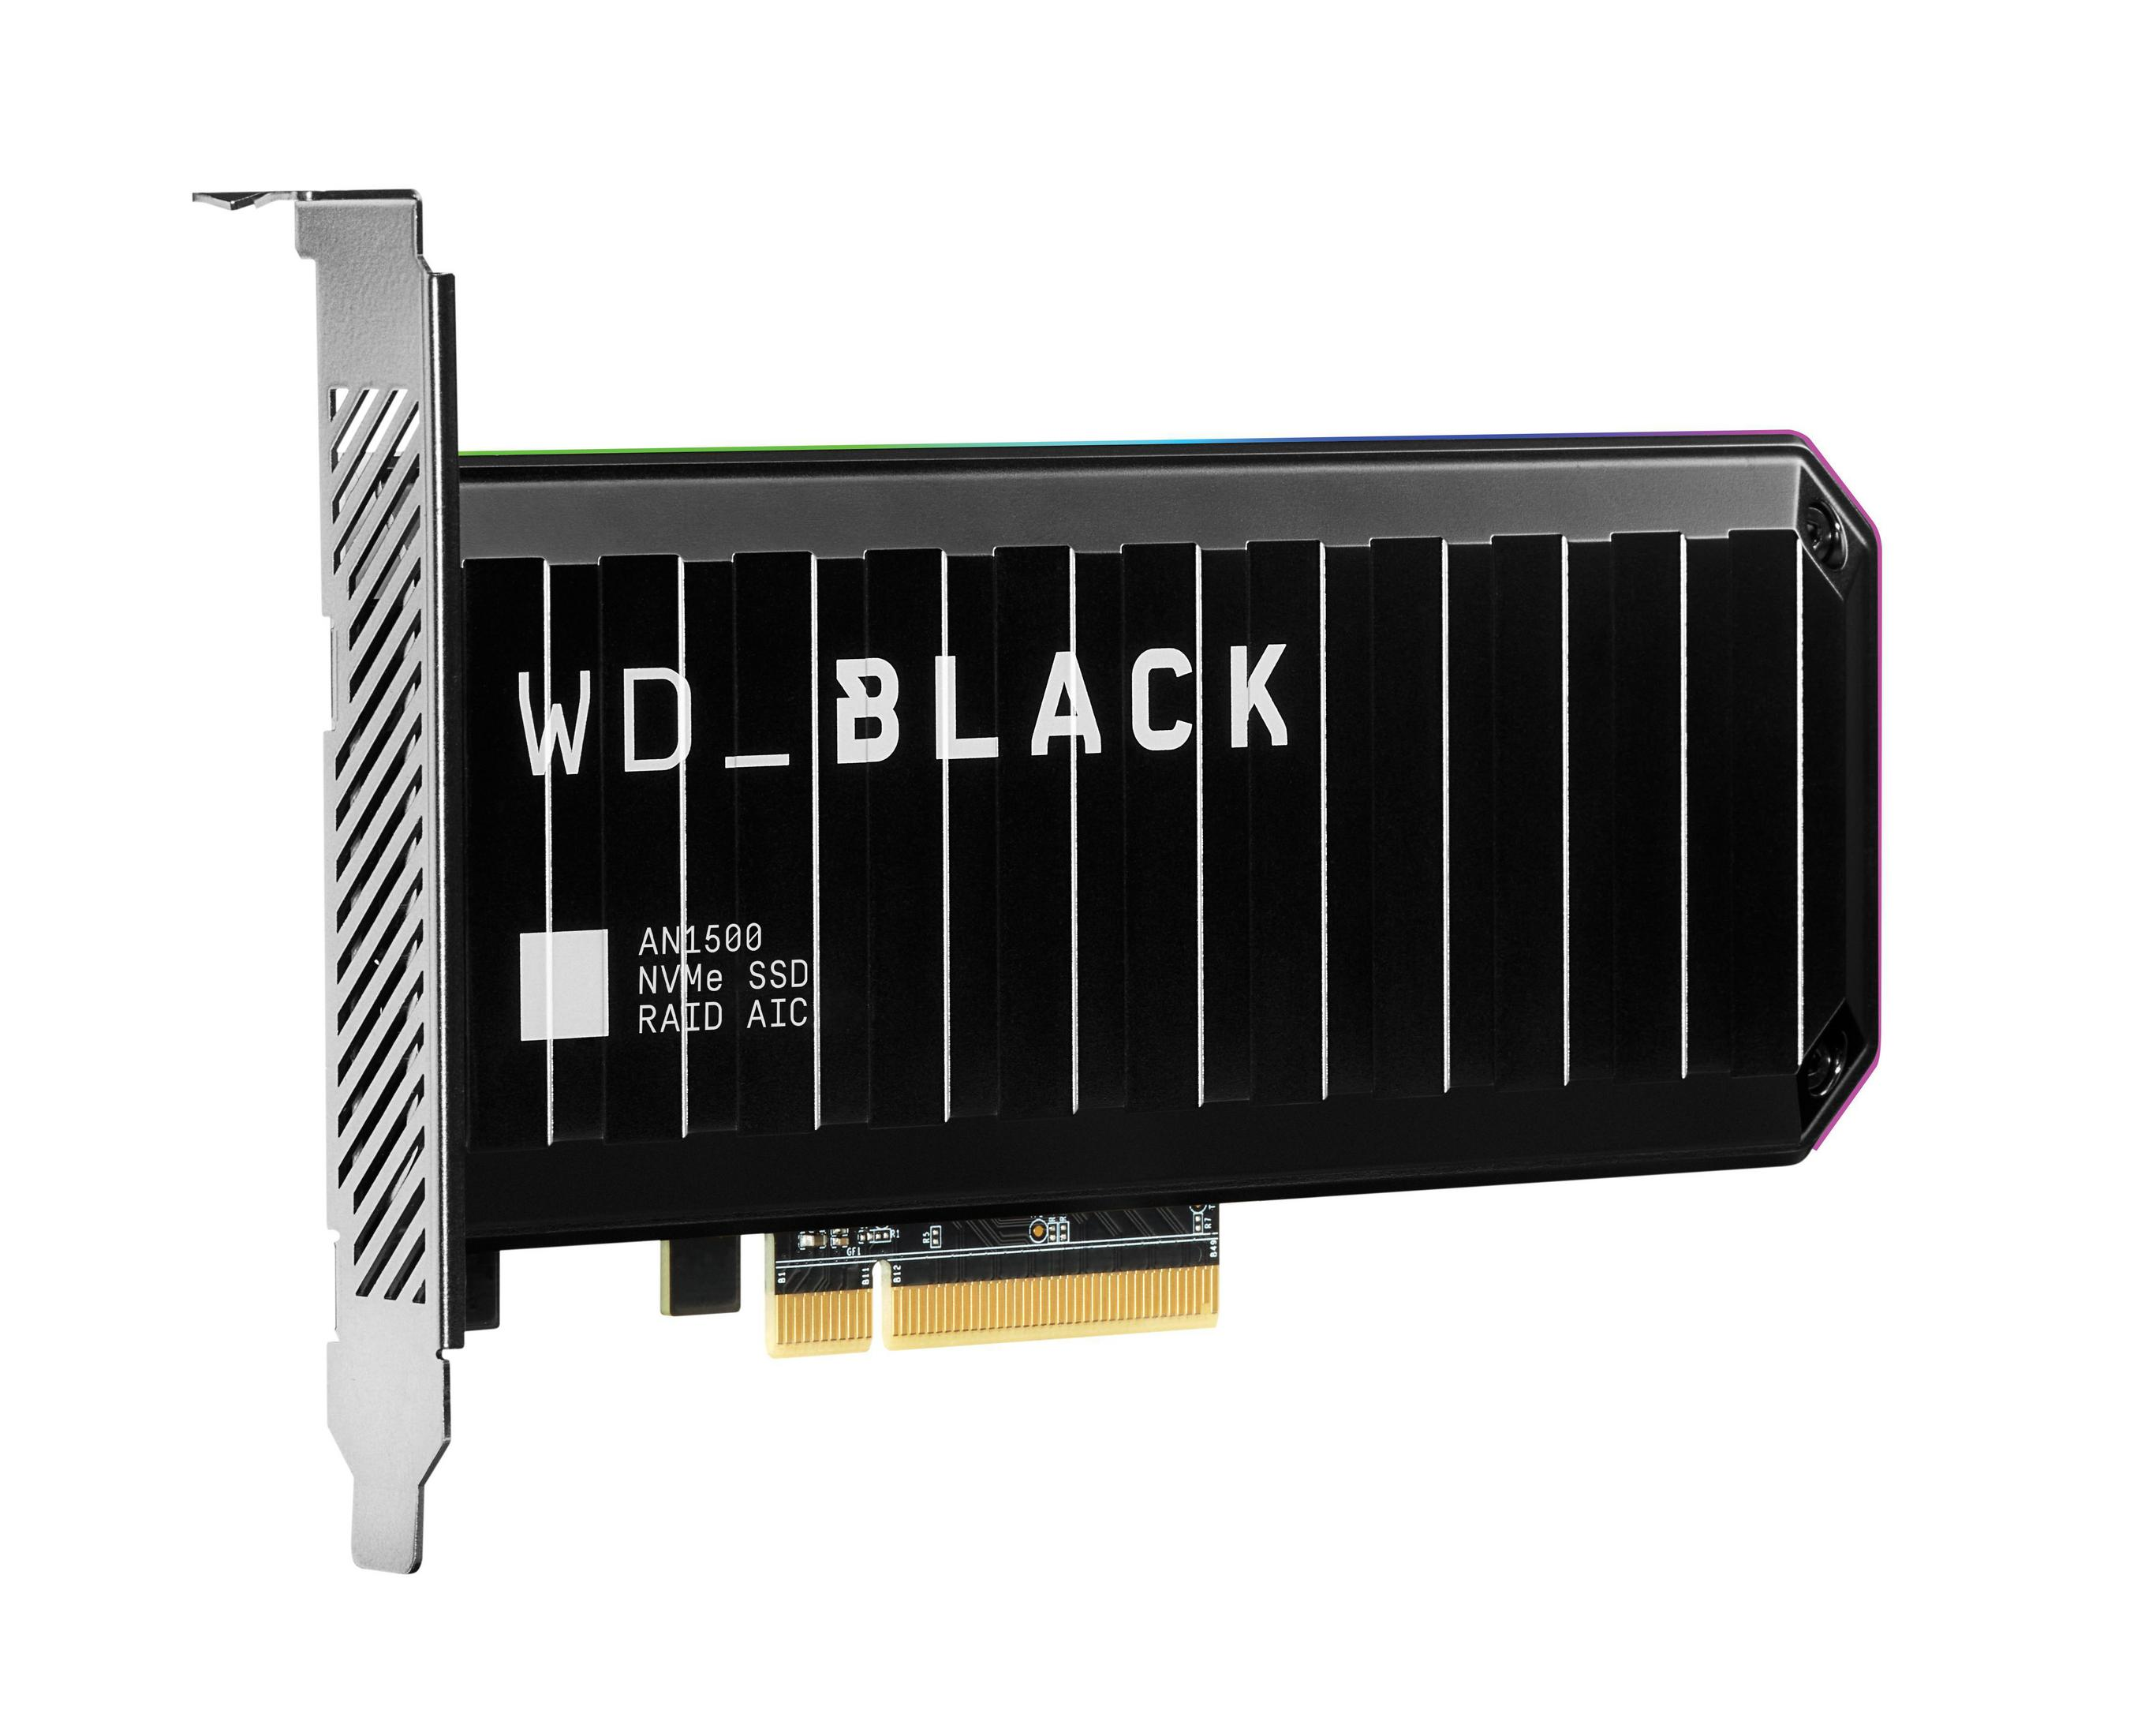 WD WDS100T1X0L WD BLACK AN1500 SSD, intern 1 PCIE 1TB, TB